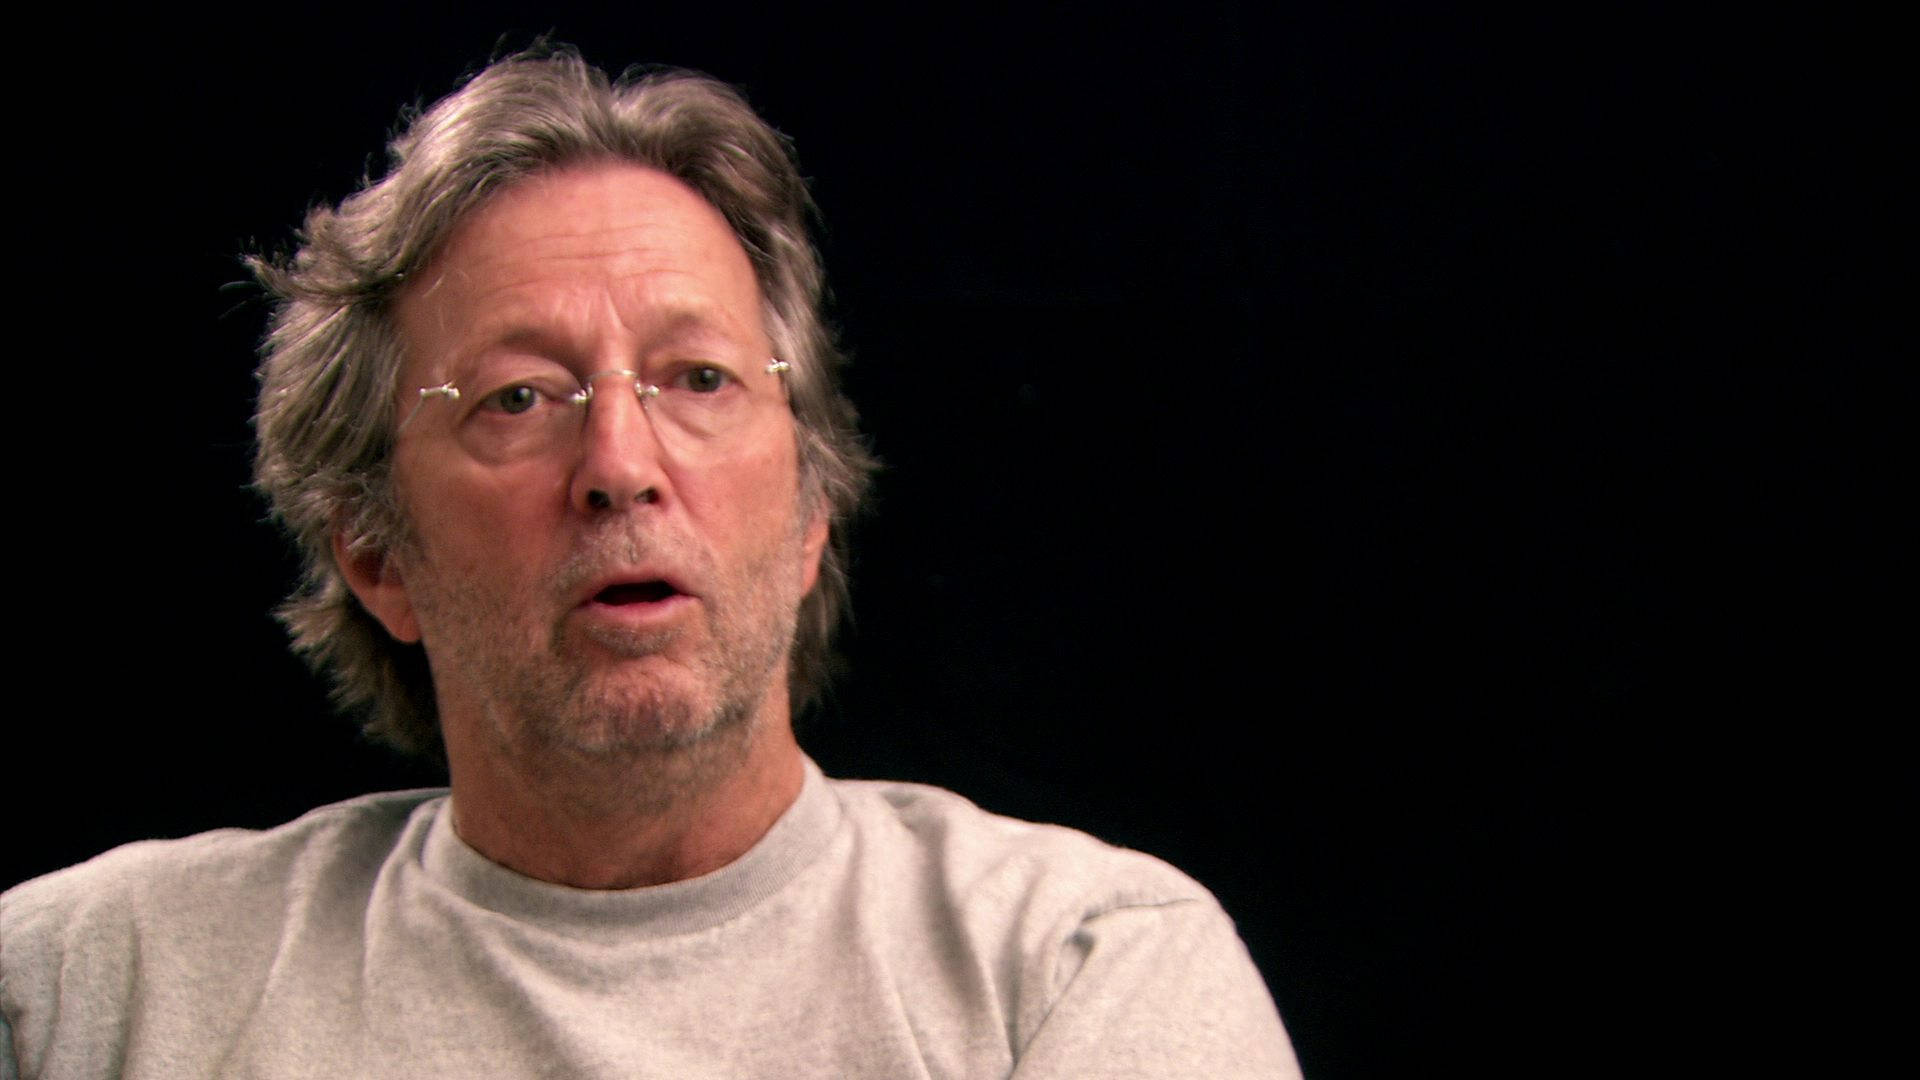 Tegn et simpelt motiv med Eric Clapton fra et interview. Wallpaper